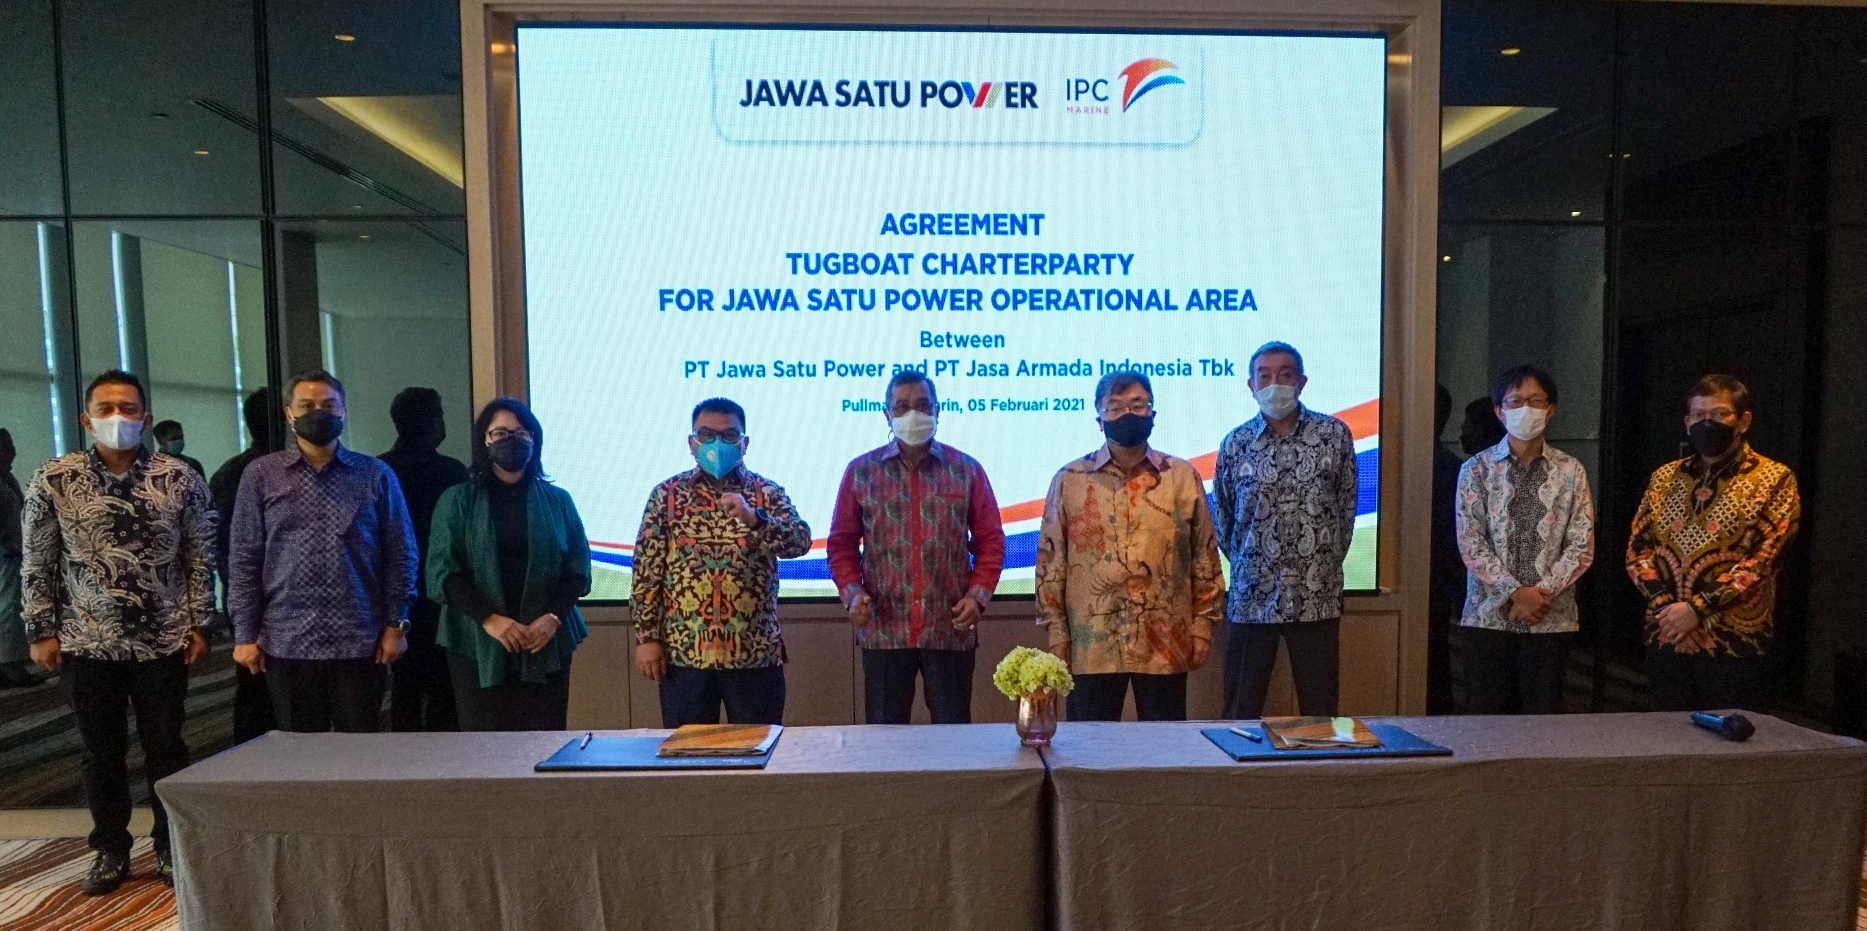 Seremoni perjanjian kerjasama IPCM - JSP